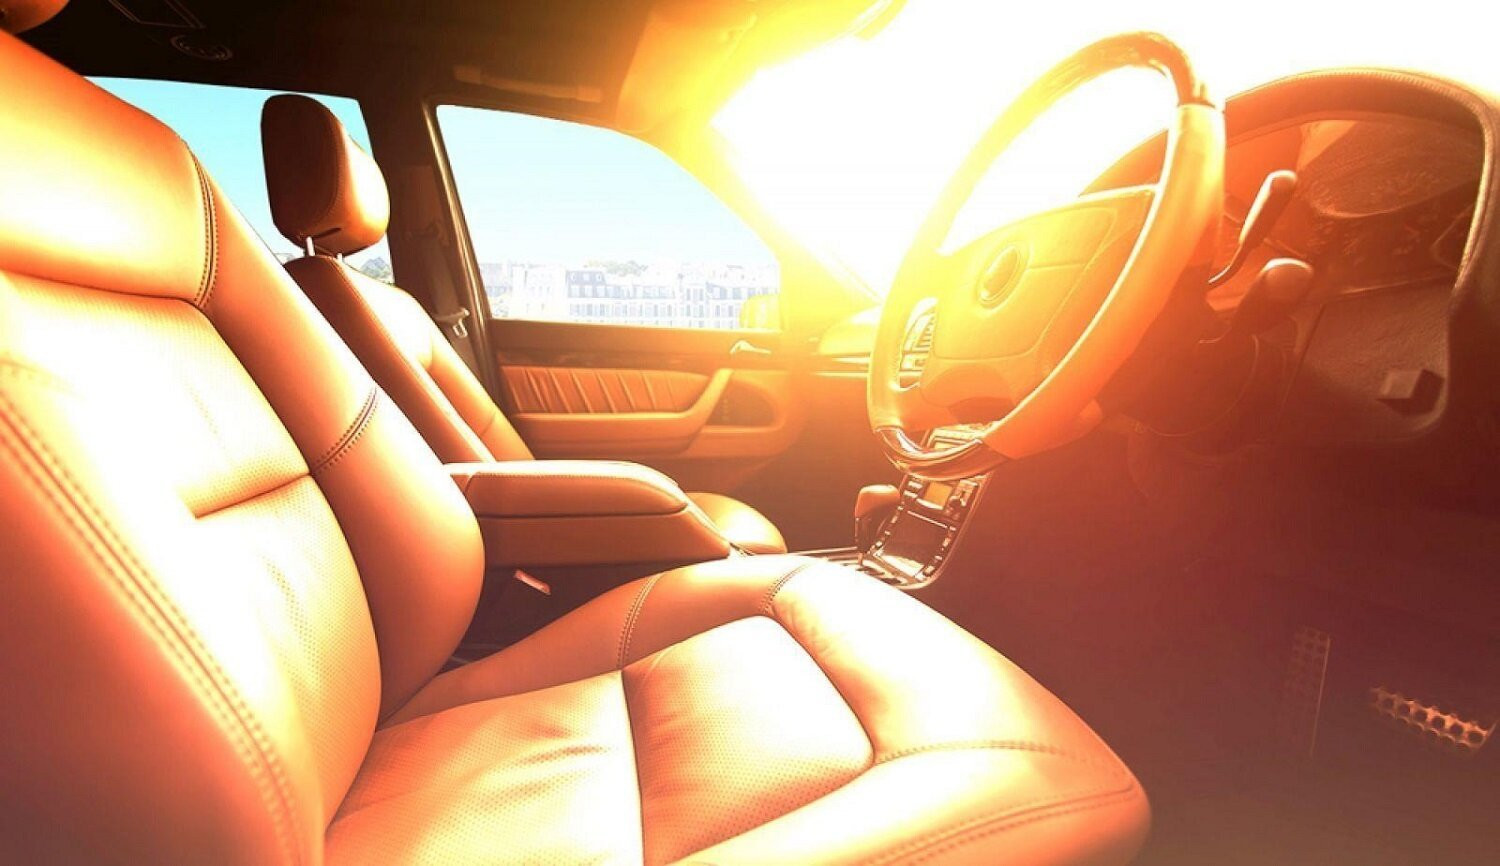 Đậu xe dưới trời nắng nóng dễ làm ảnh hưởng đến nội thất và gây cảm giác khó chịu khi vào xe. (Ảnh minh hoạ).